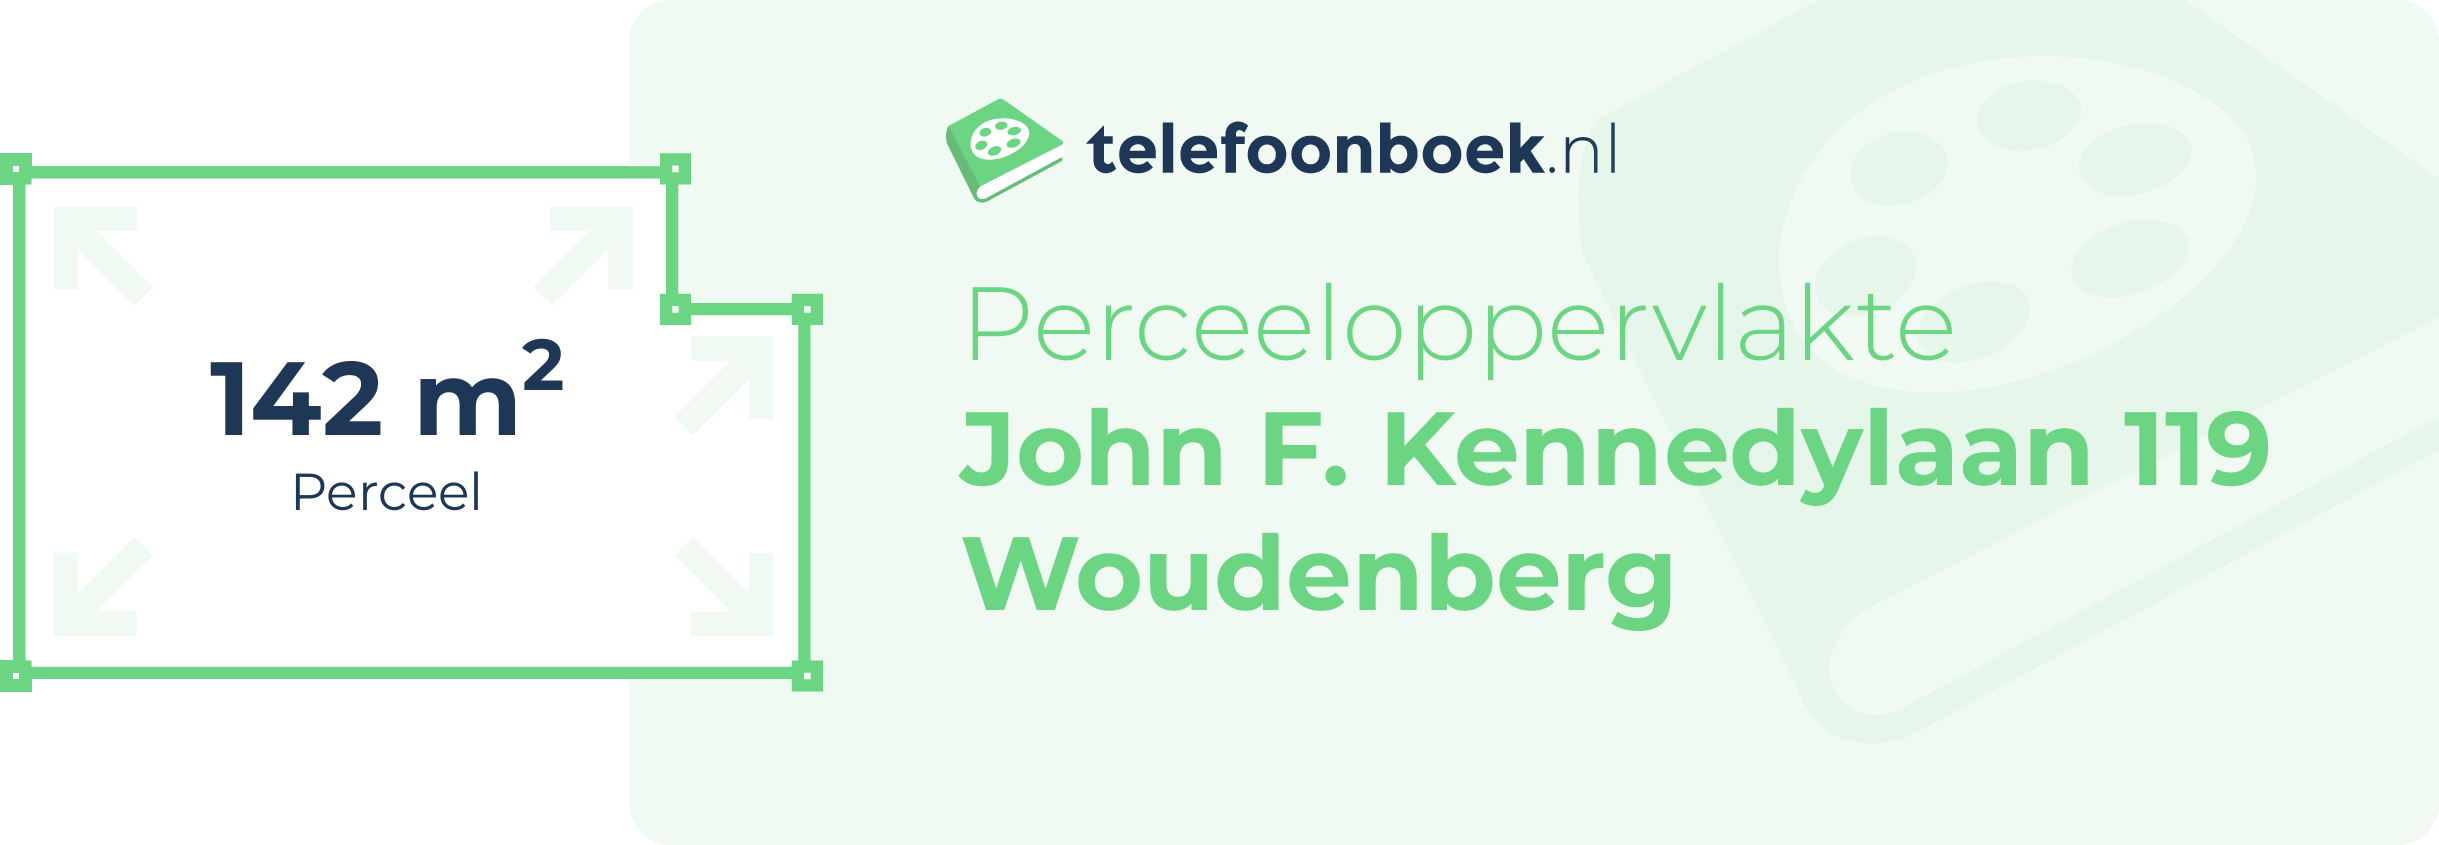 Perceeloppervlakte John F. Kennedylaan 119 Woudenberg